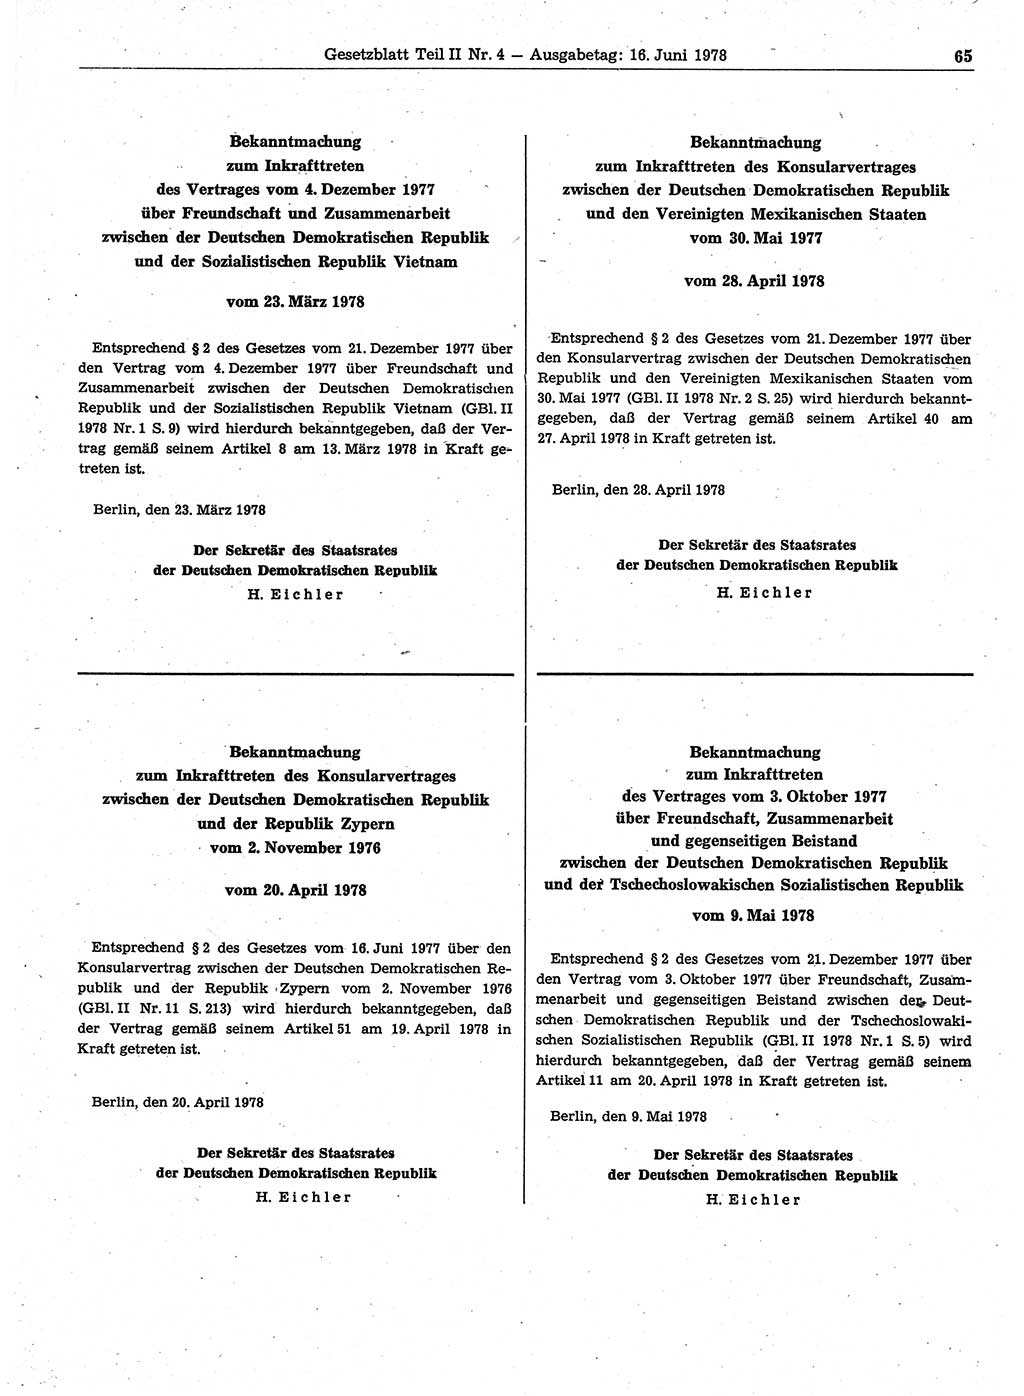 Gesetzblatt (GBl.) der Deutschen Demokratischen Republik (DDR) Teil ⅠⅠ 1978, Seite 65 (GBl. DDR ⅠⅠ 1978, S. 65)